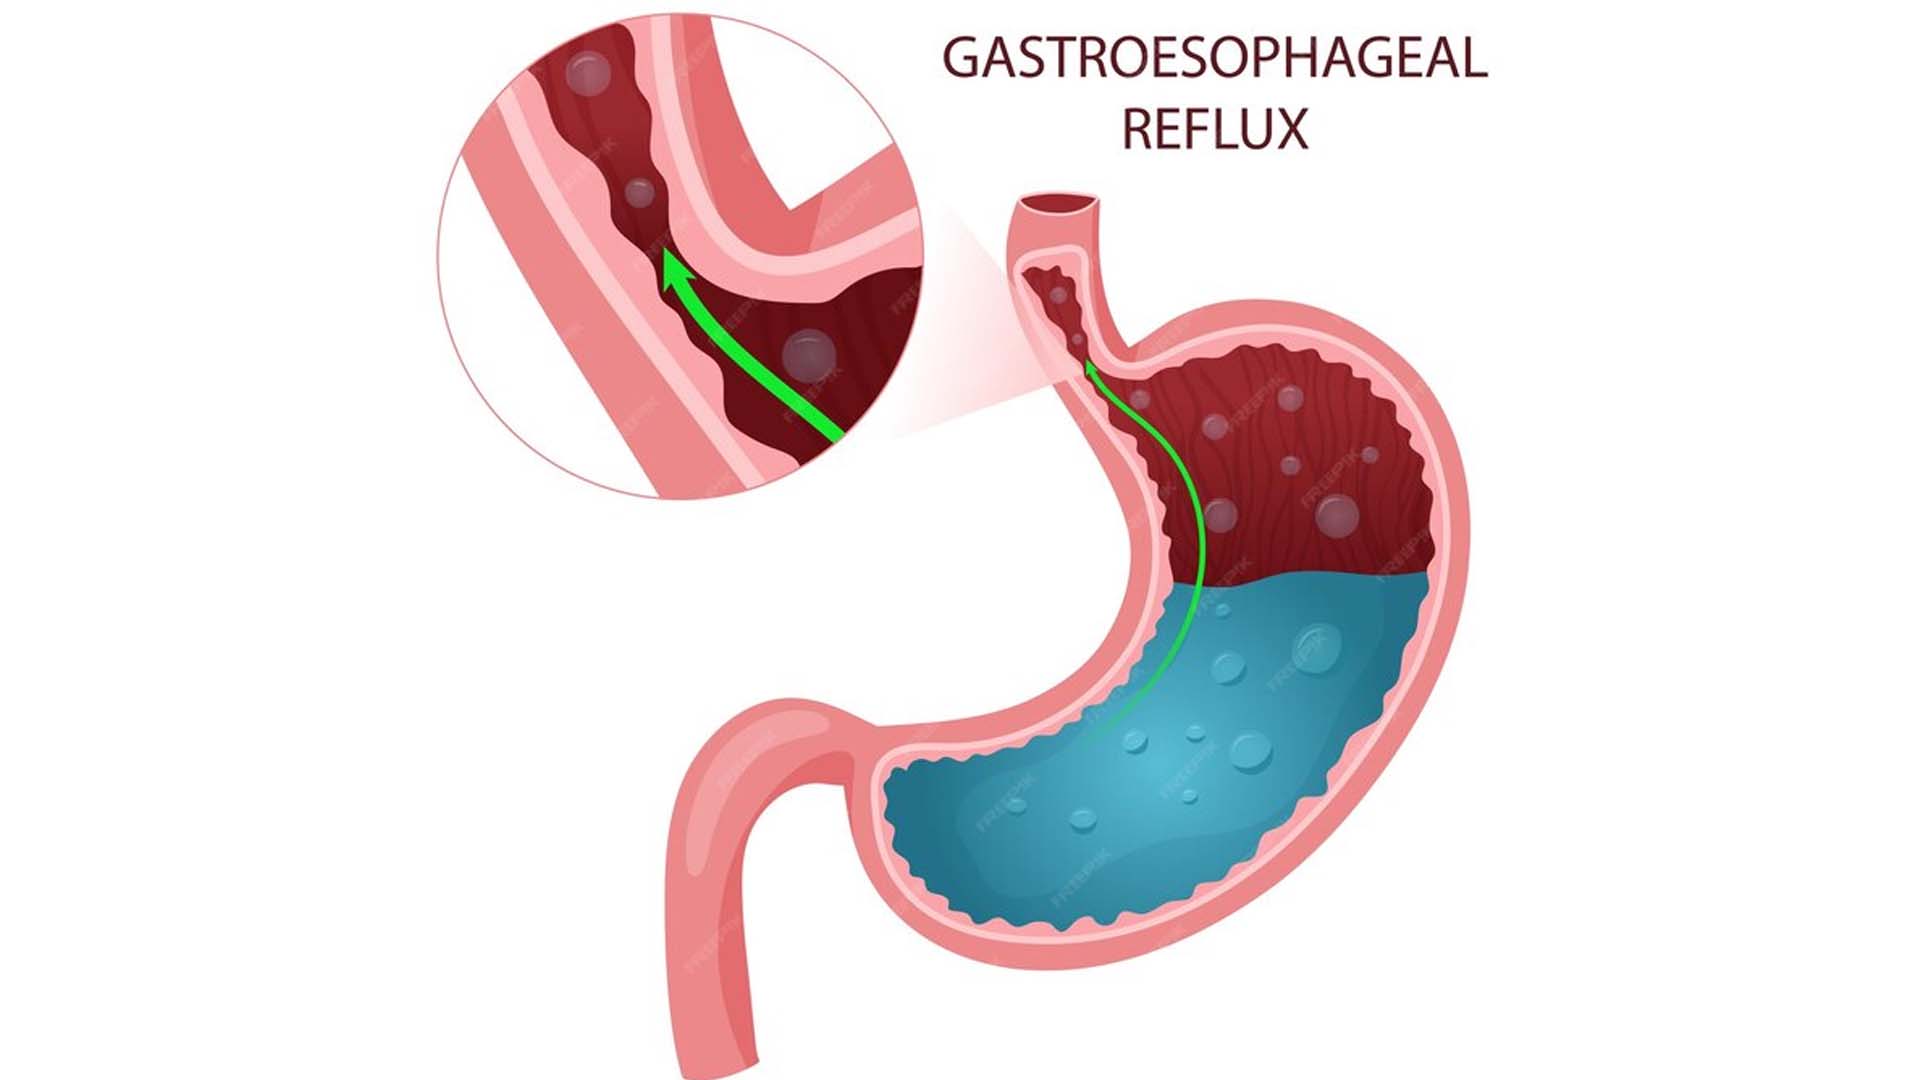 Acid reflux gastroesophageal reflux disease or GERD